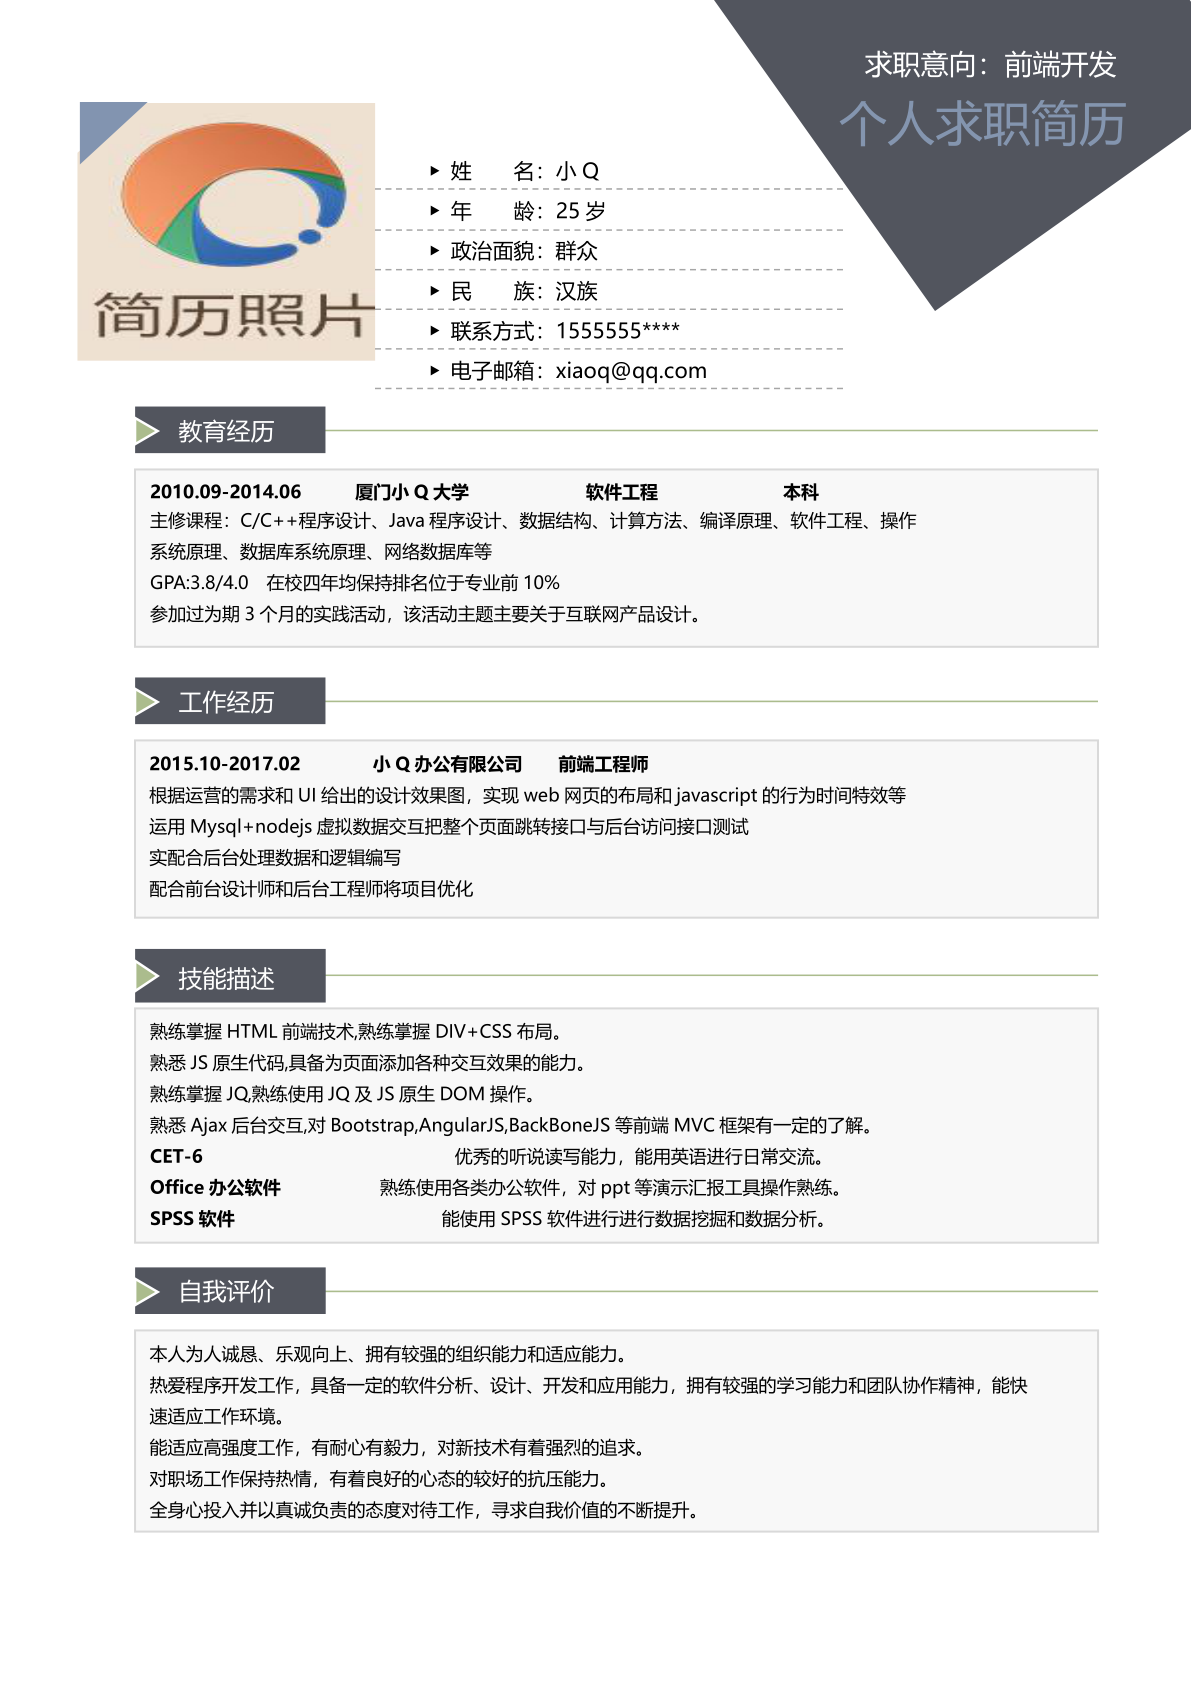 HR指导-日语翻译简历模板免费使用 - 职场密码